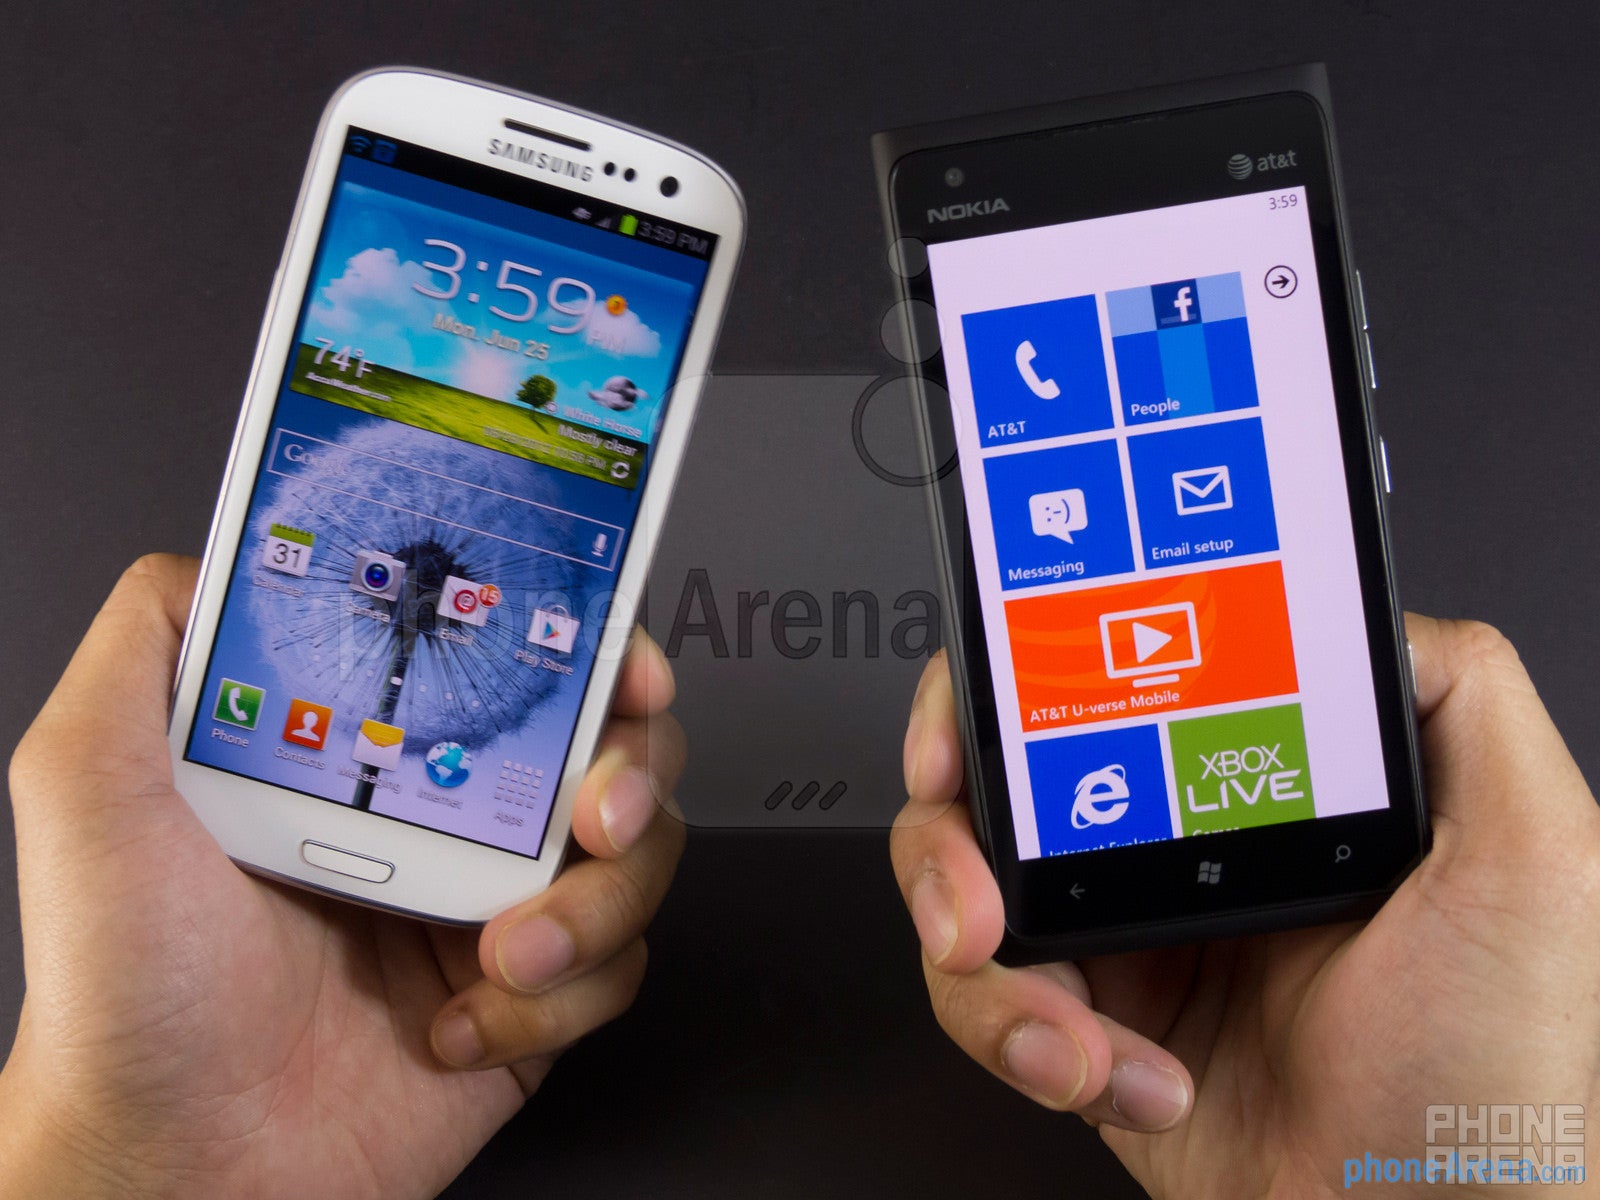 Samsung Galaxy S III vs Nokia Lumia 900